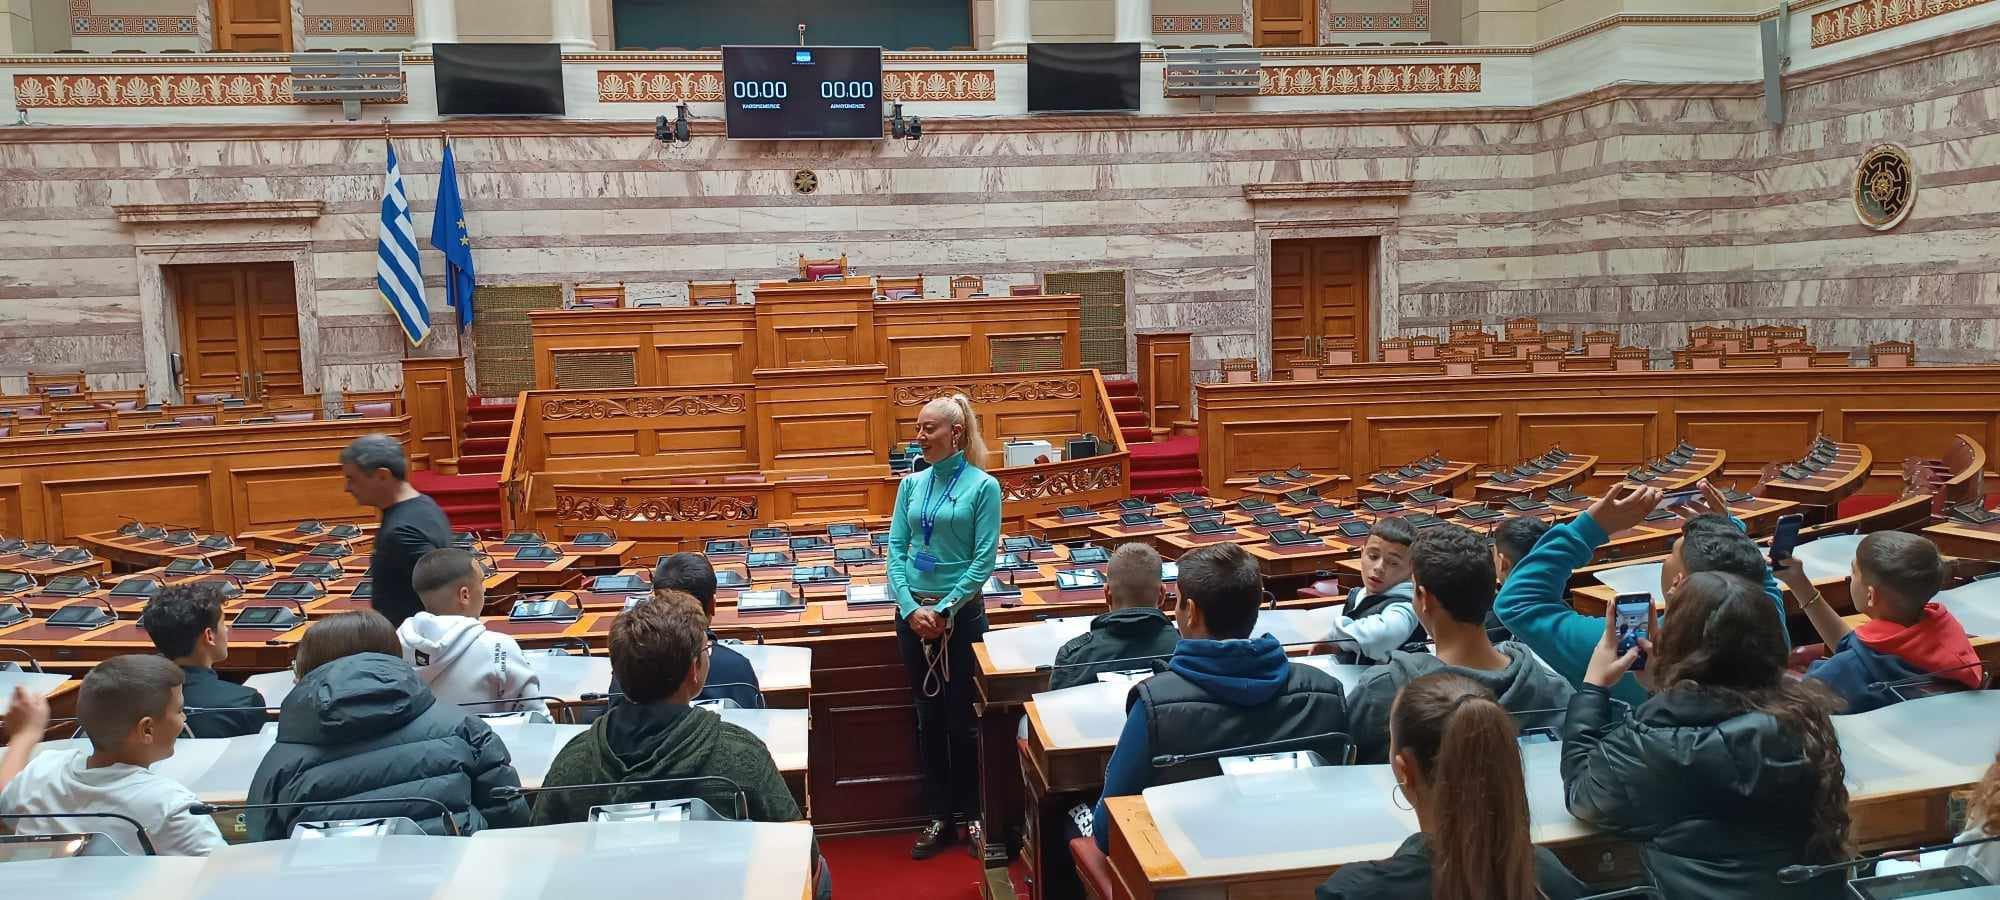 Μαθητές της Εύβοιας πήγαν στην Βουλή – Δείτε από ποιο σχολείο